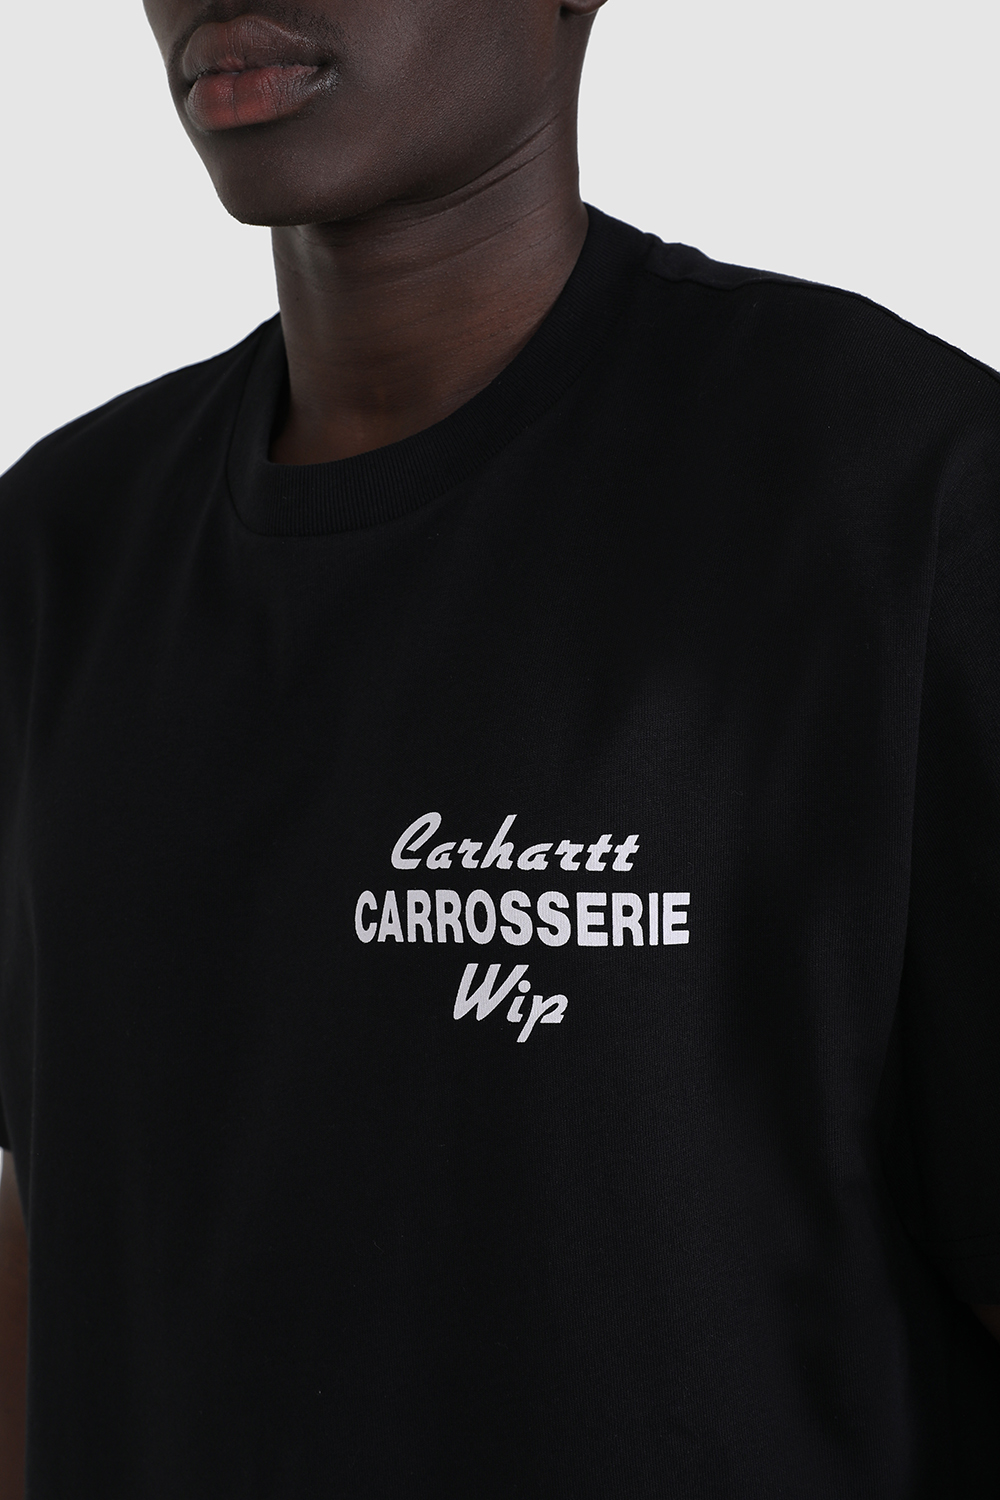 חולצת טי CARHARTT WIP